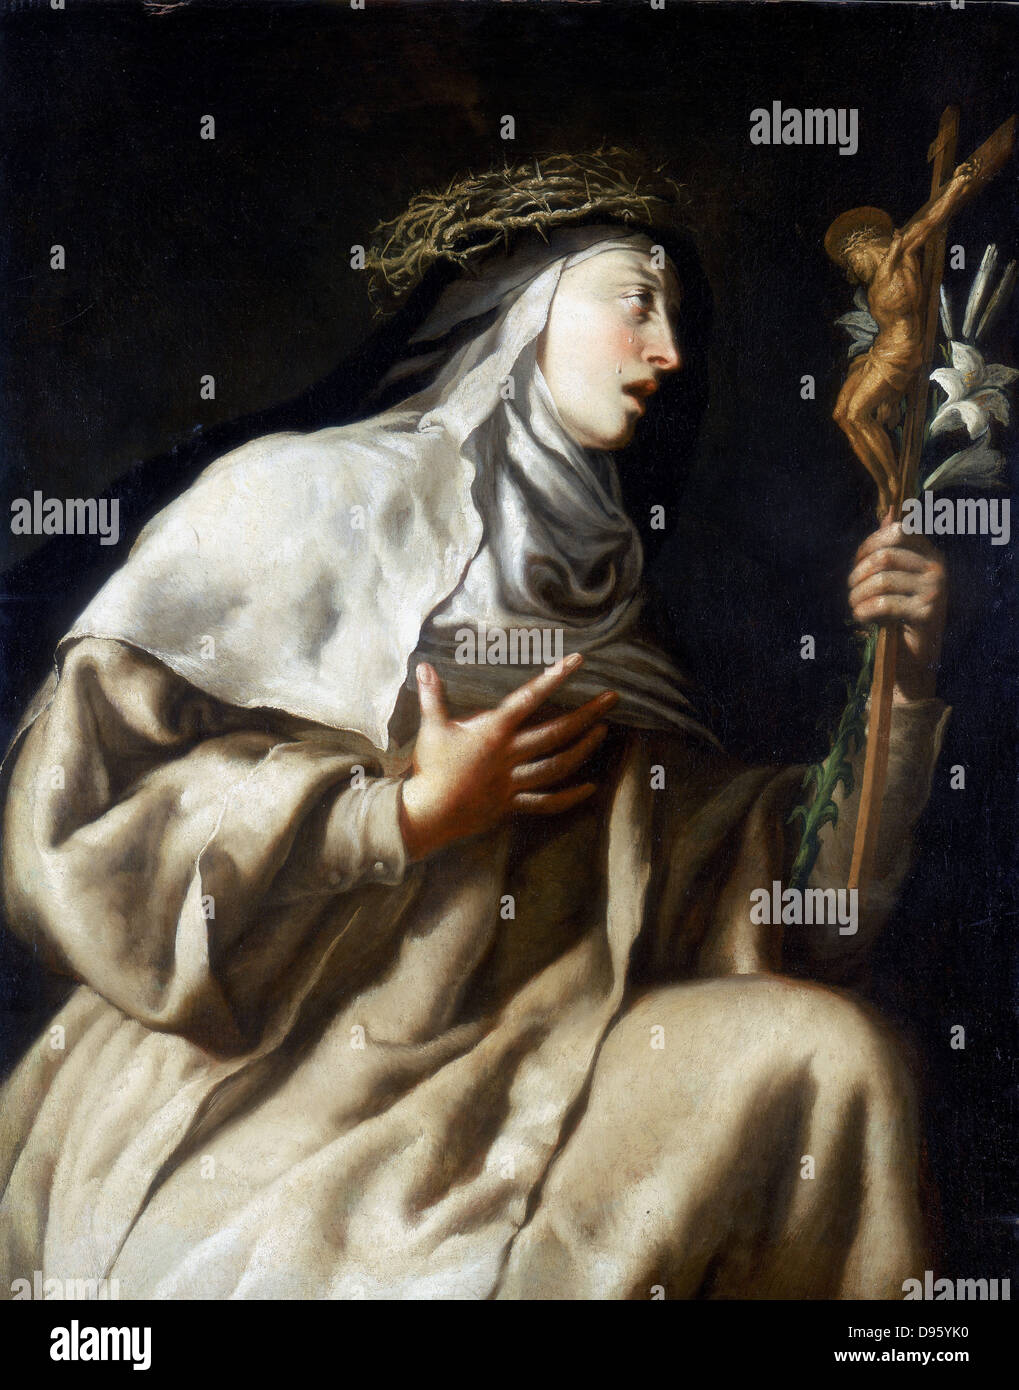 Hl. Teresa von Avila (Theresa) vor dem Kreuz. Spanische Nonne (1515-1582): Reformator der Karmeliten. Guido Cagnacci (1601-1681). Öl auf Leinwand. Private Sammlung. Stockfoto